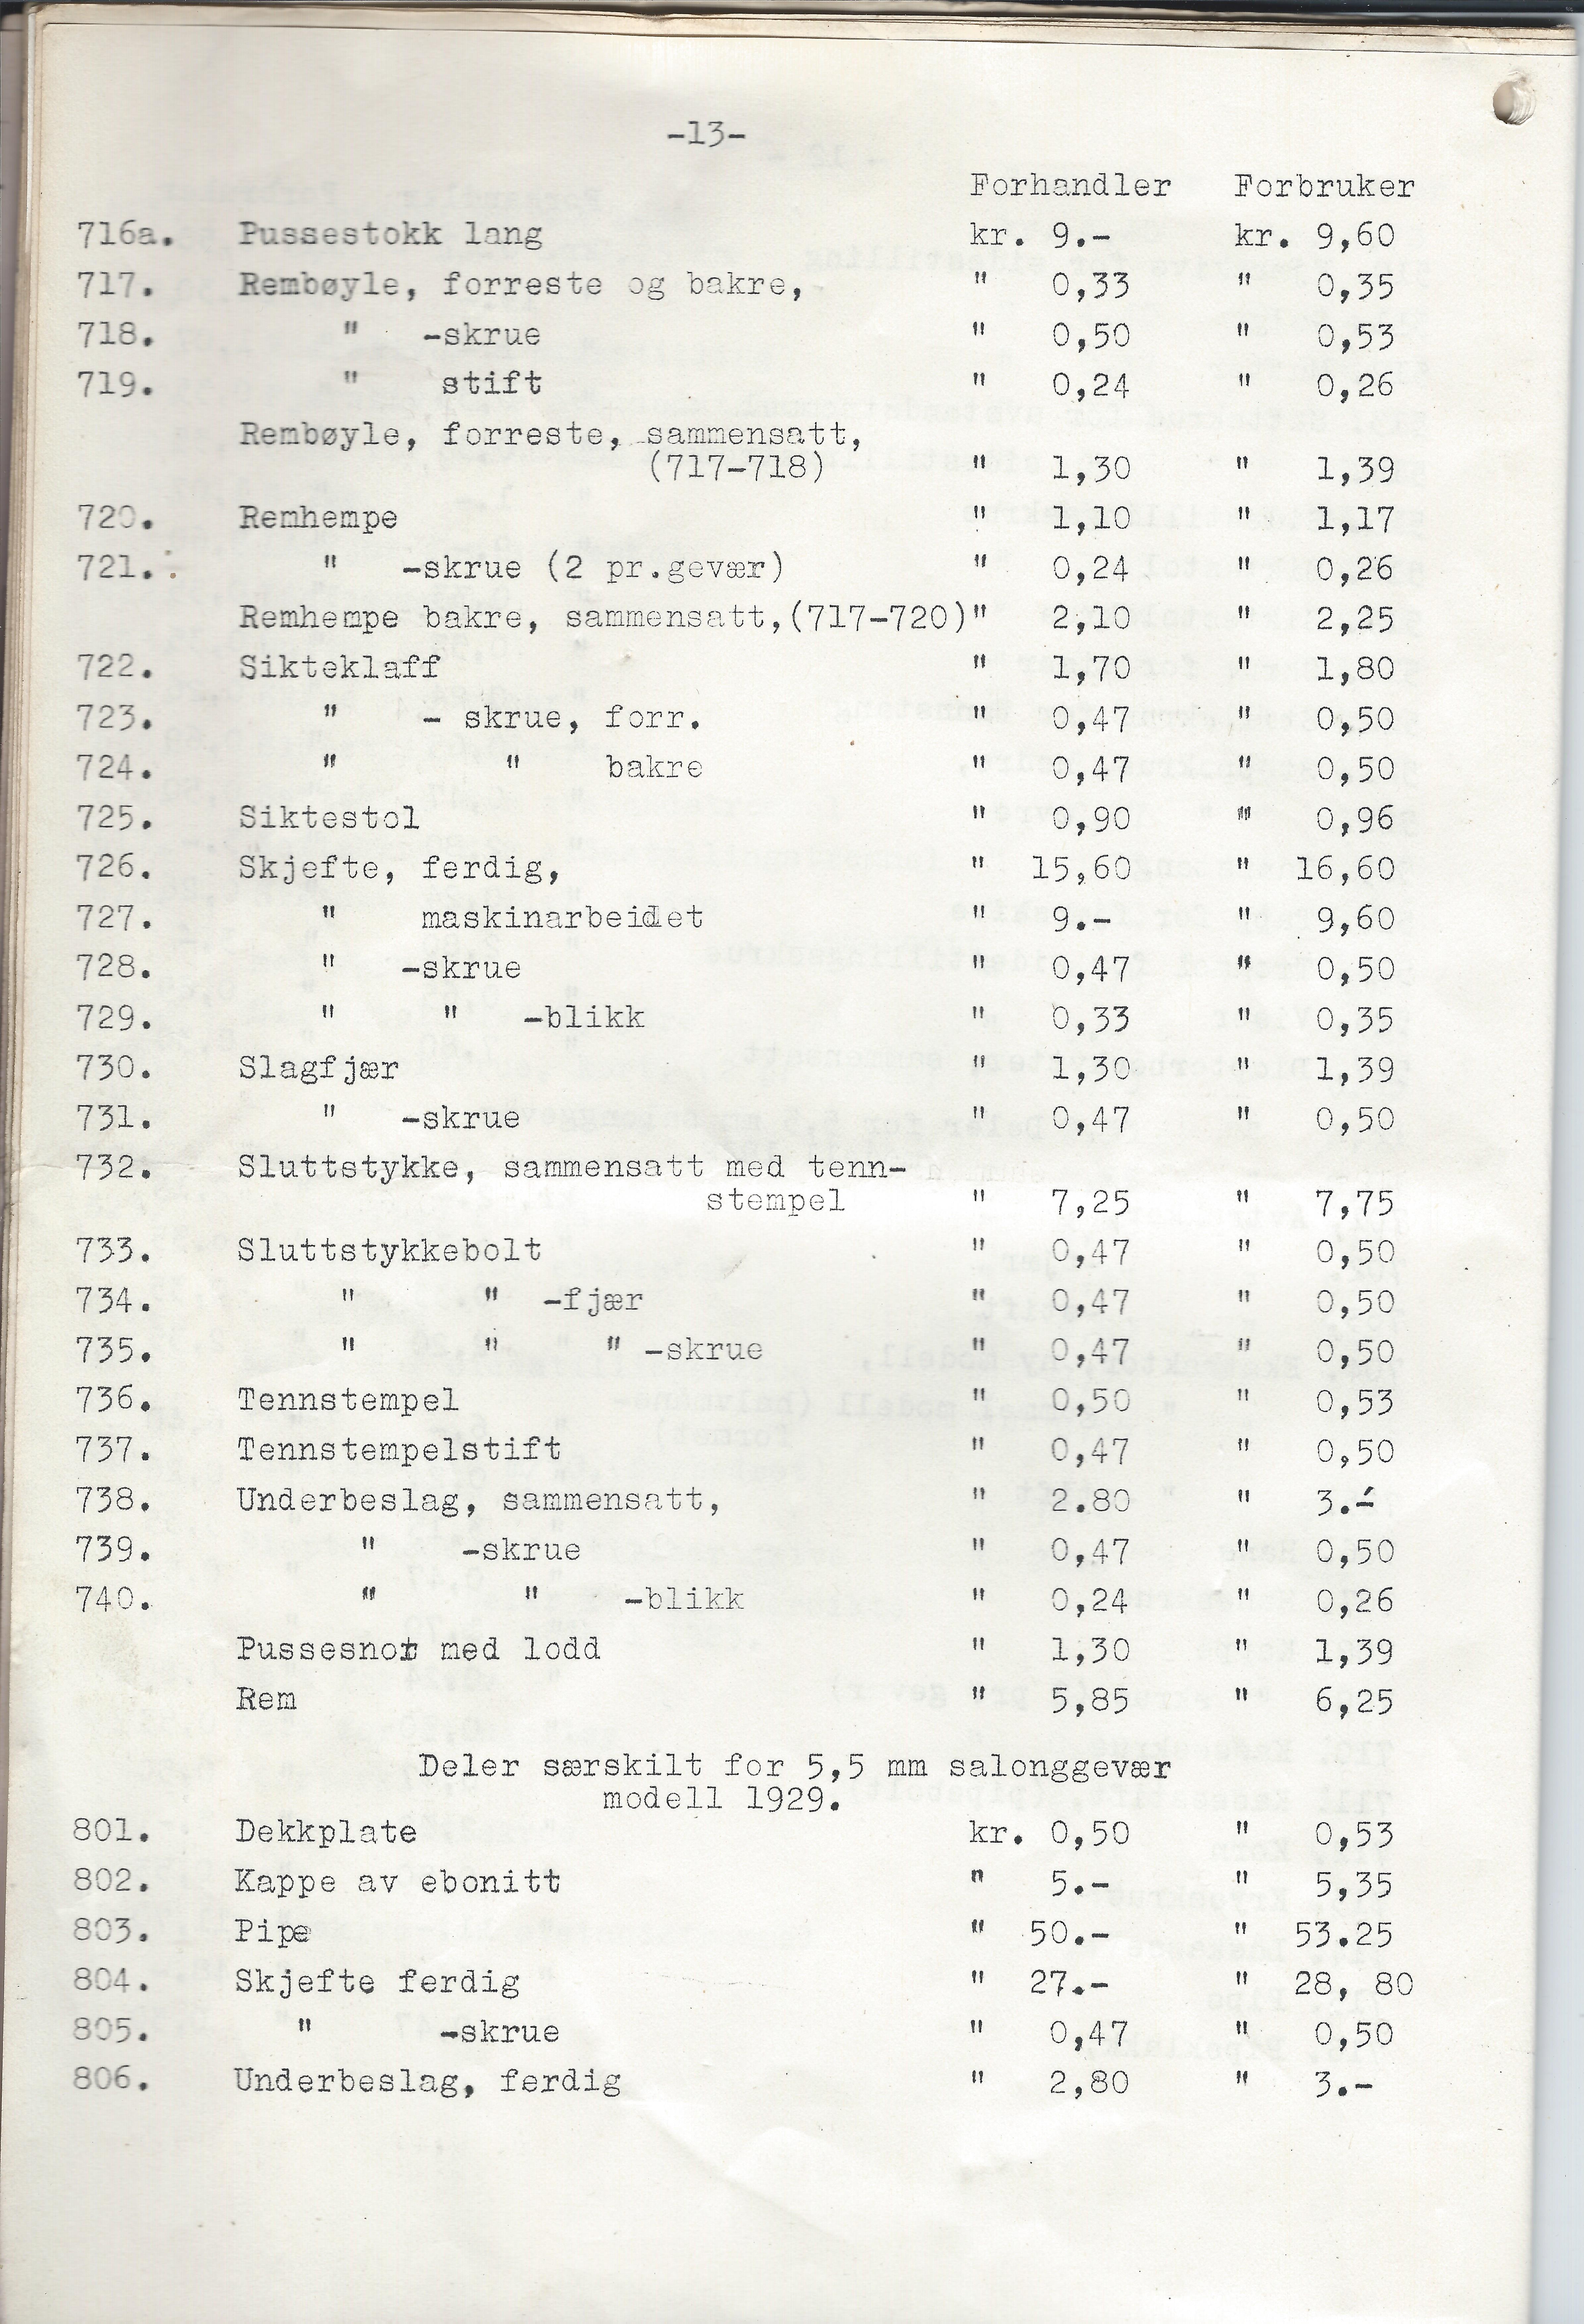 ./doc/KV/KV-Prisliste-Deler-Nr15-September-1948-14.jpg